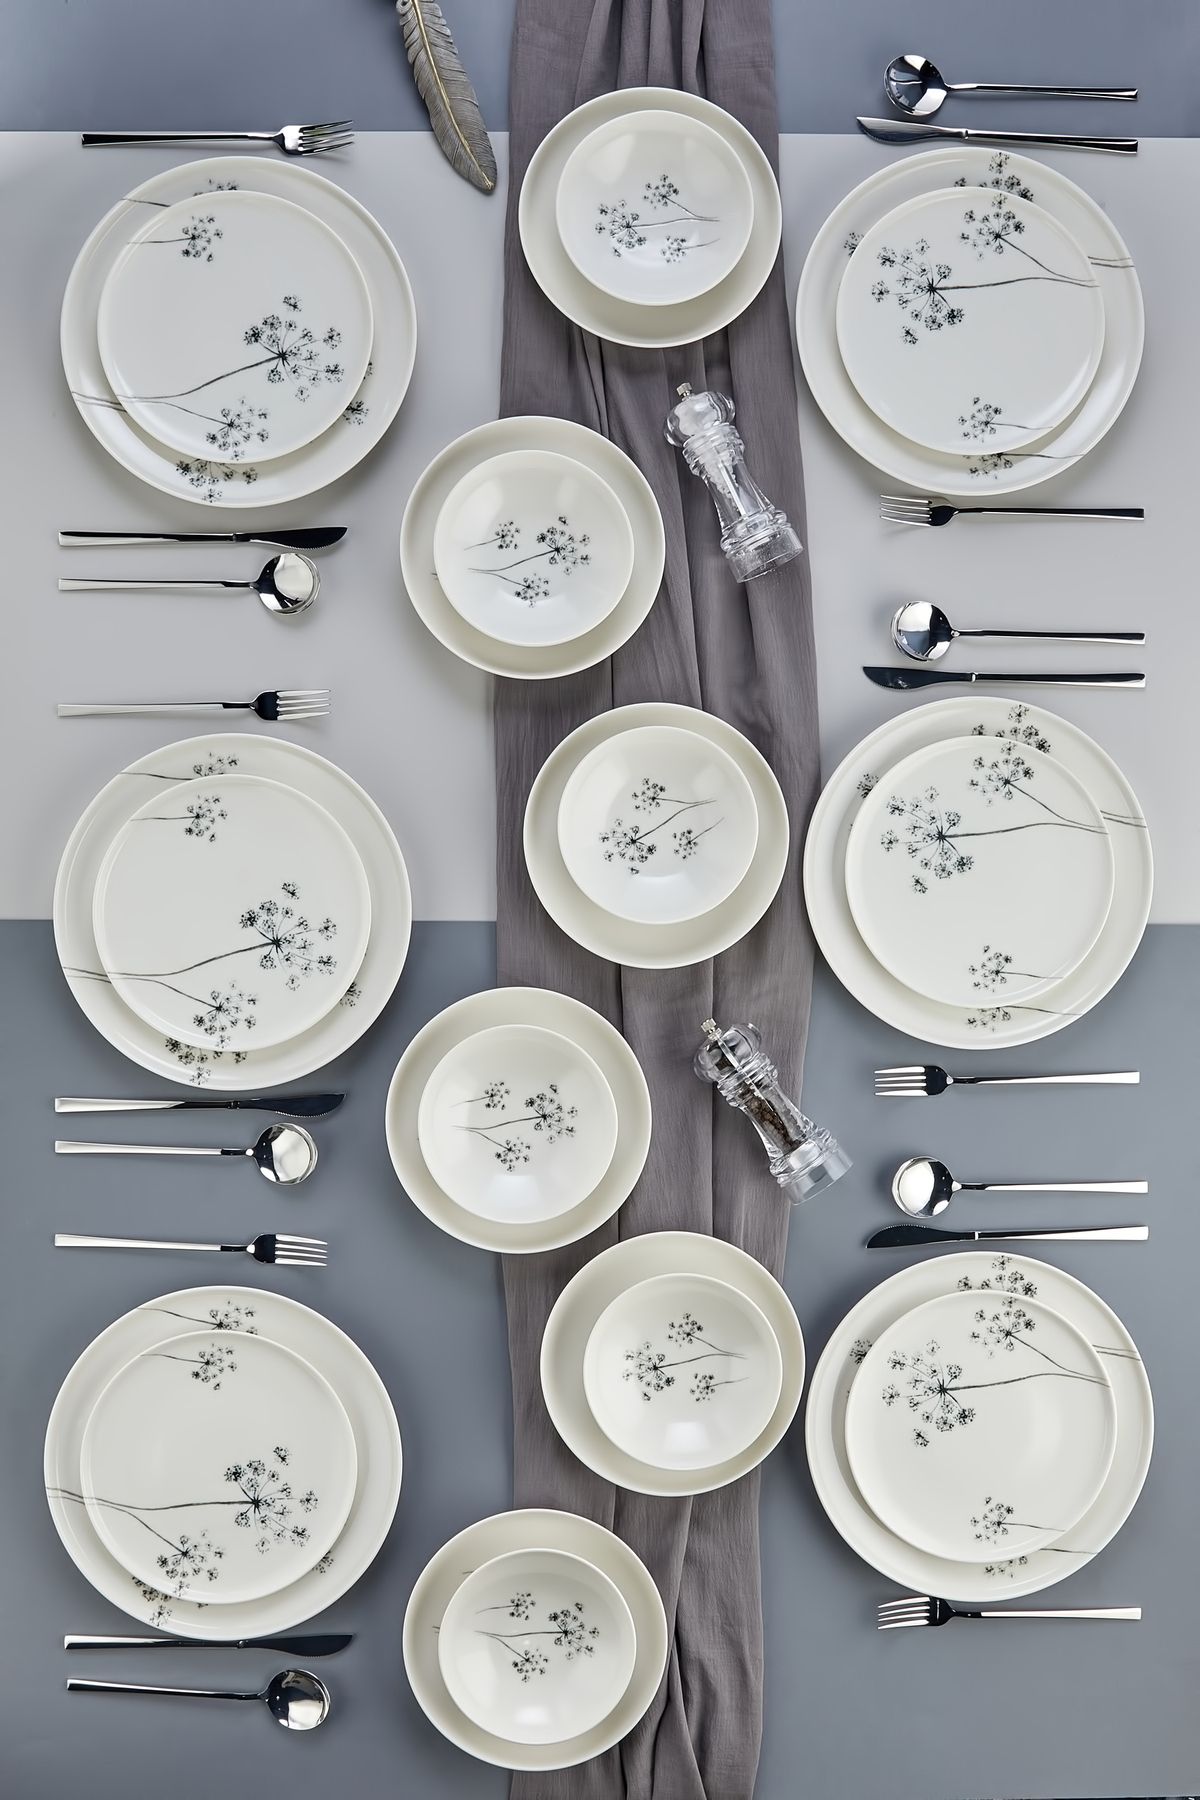 TBKHOME Premium Porselen Gümüş Çiçekli 24 Parça 6 Kişilik Yemek Takımı, Seti